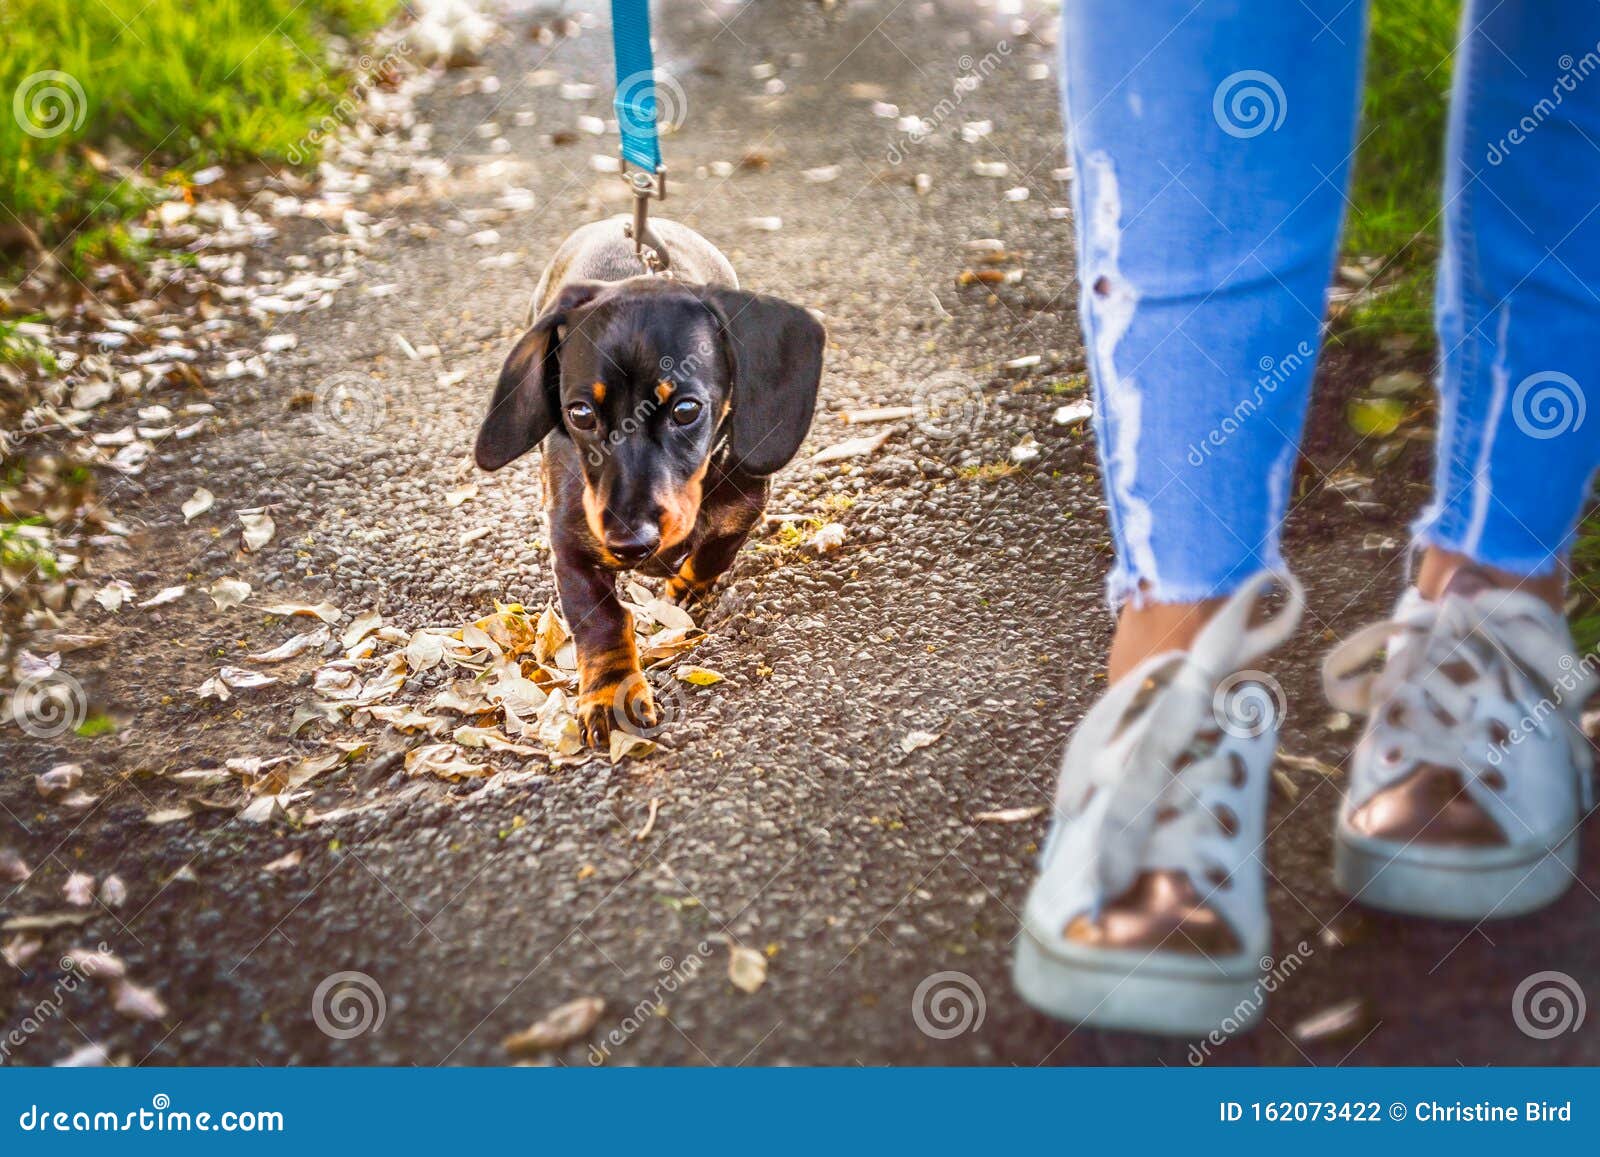 Dachshund - Sidewalk Dog